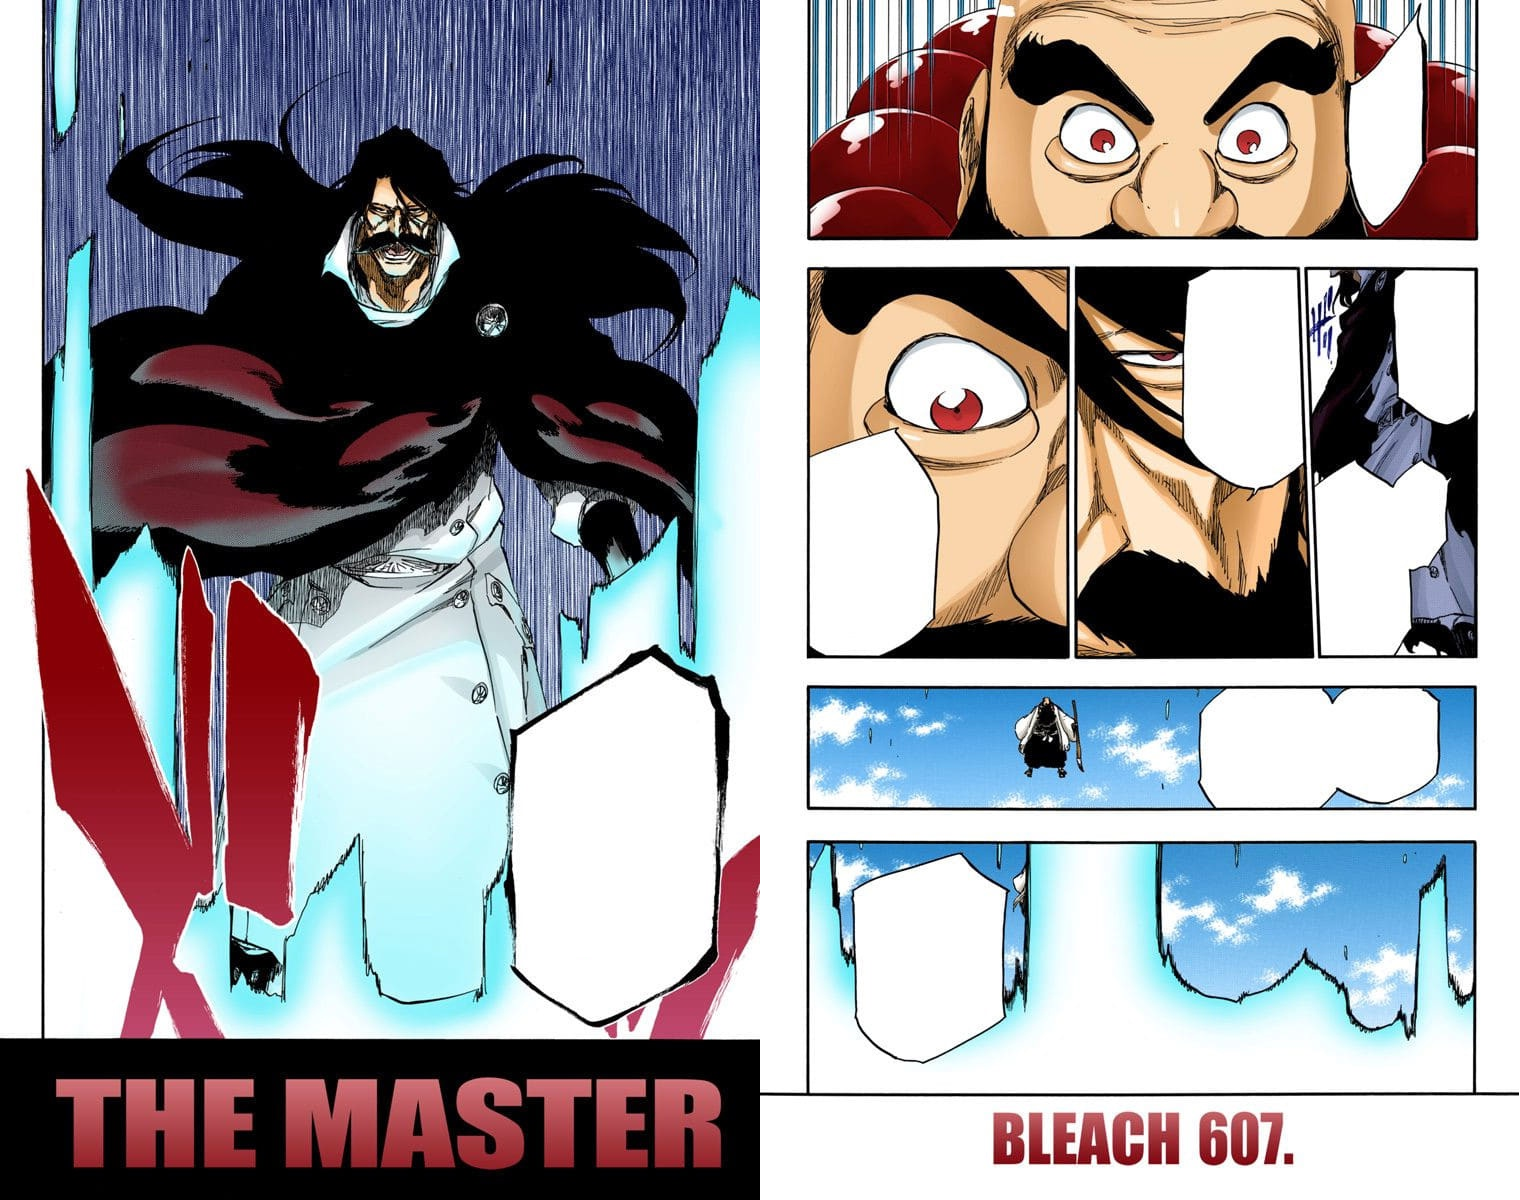 Black Anime Characters in Bleach ✊🏾🈵🗡️ #bleach #anime #manga #shone